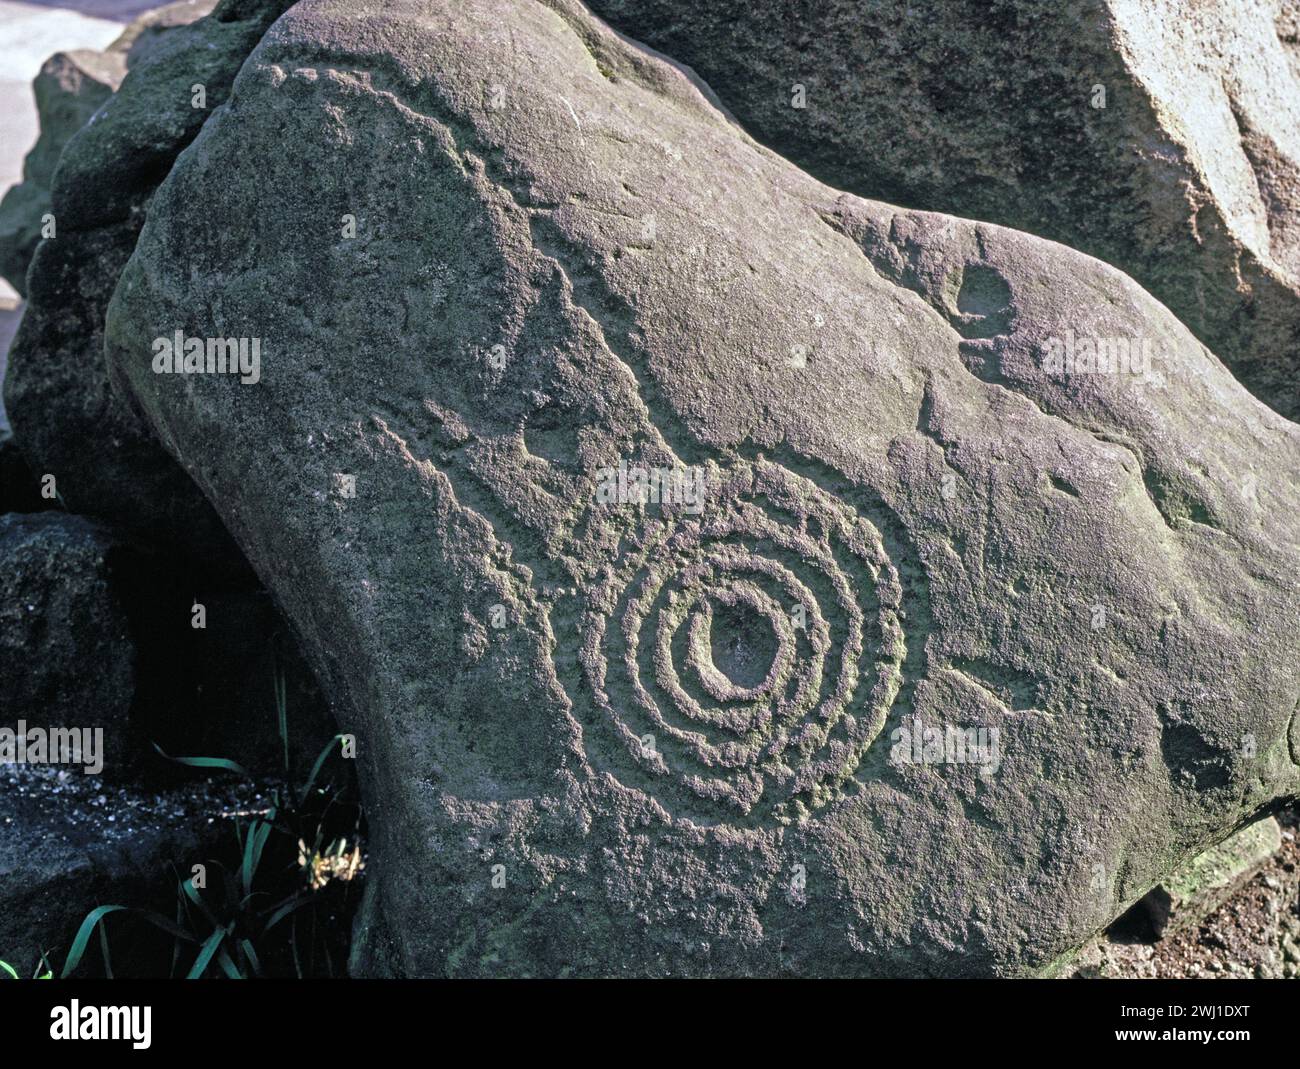 Hawaii. Arte rupestre antica. Anelli concentrici in pietra incisa con incisione petroglifica. Foto Stock